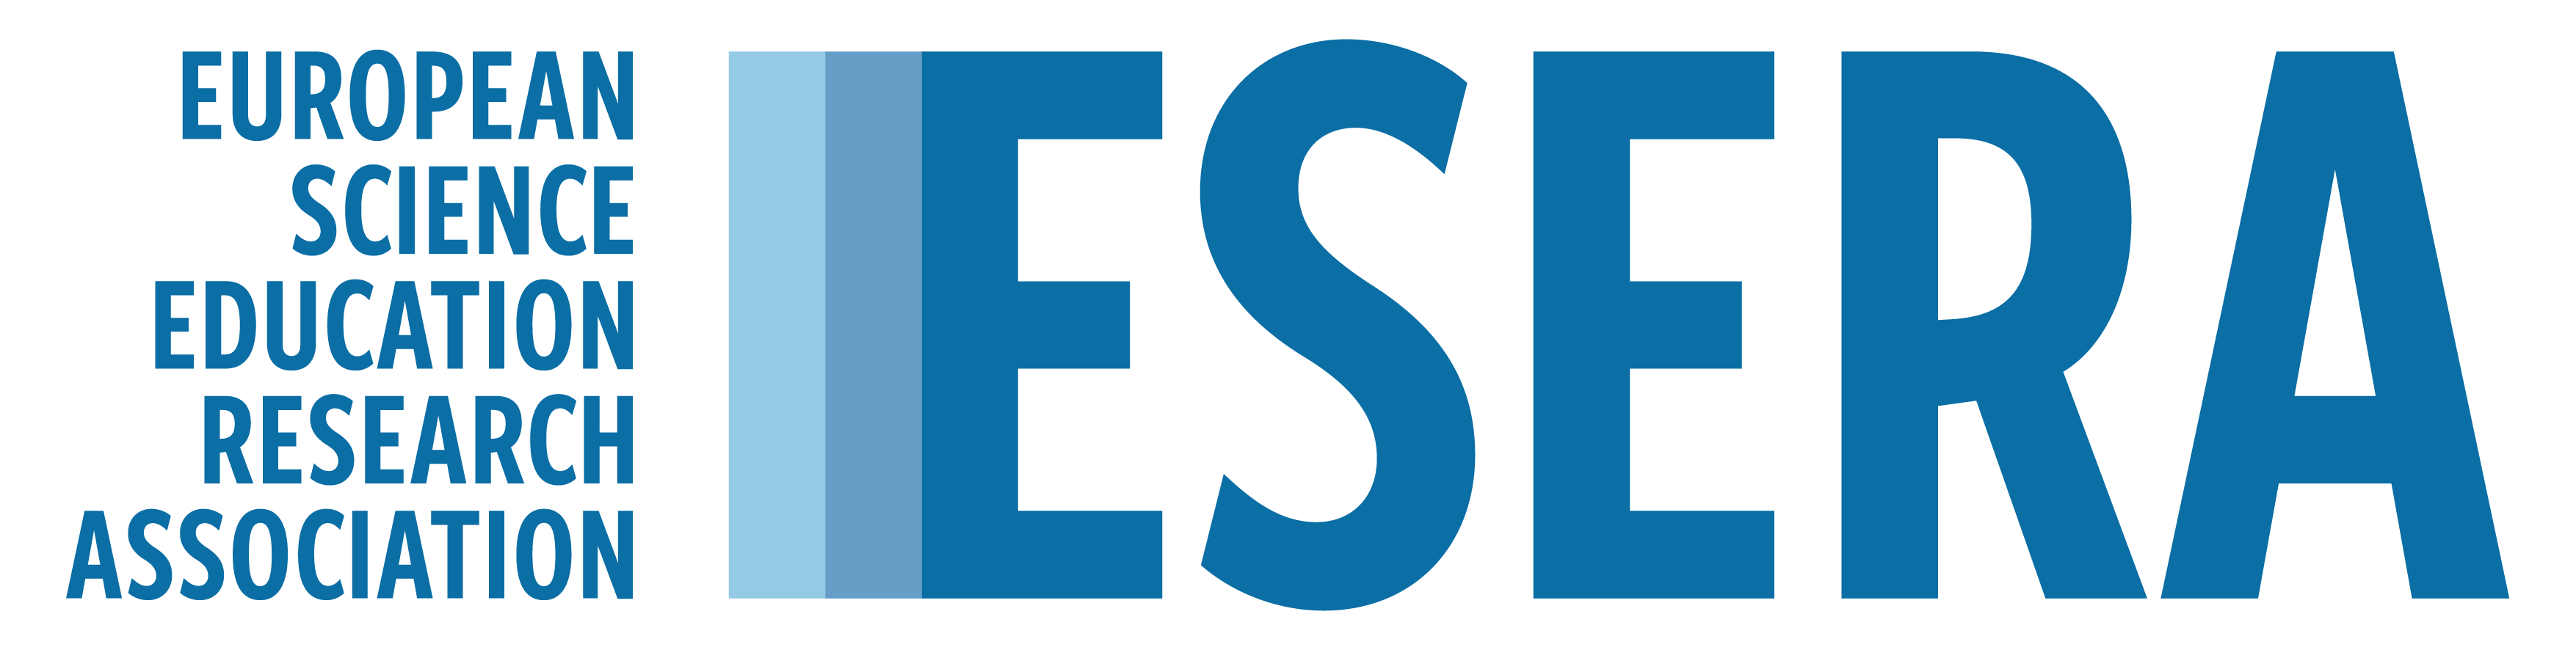 ESERA logo